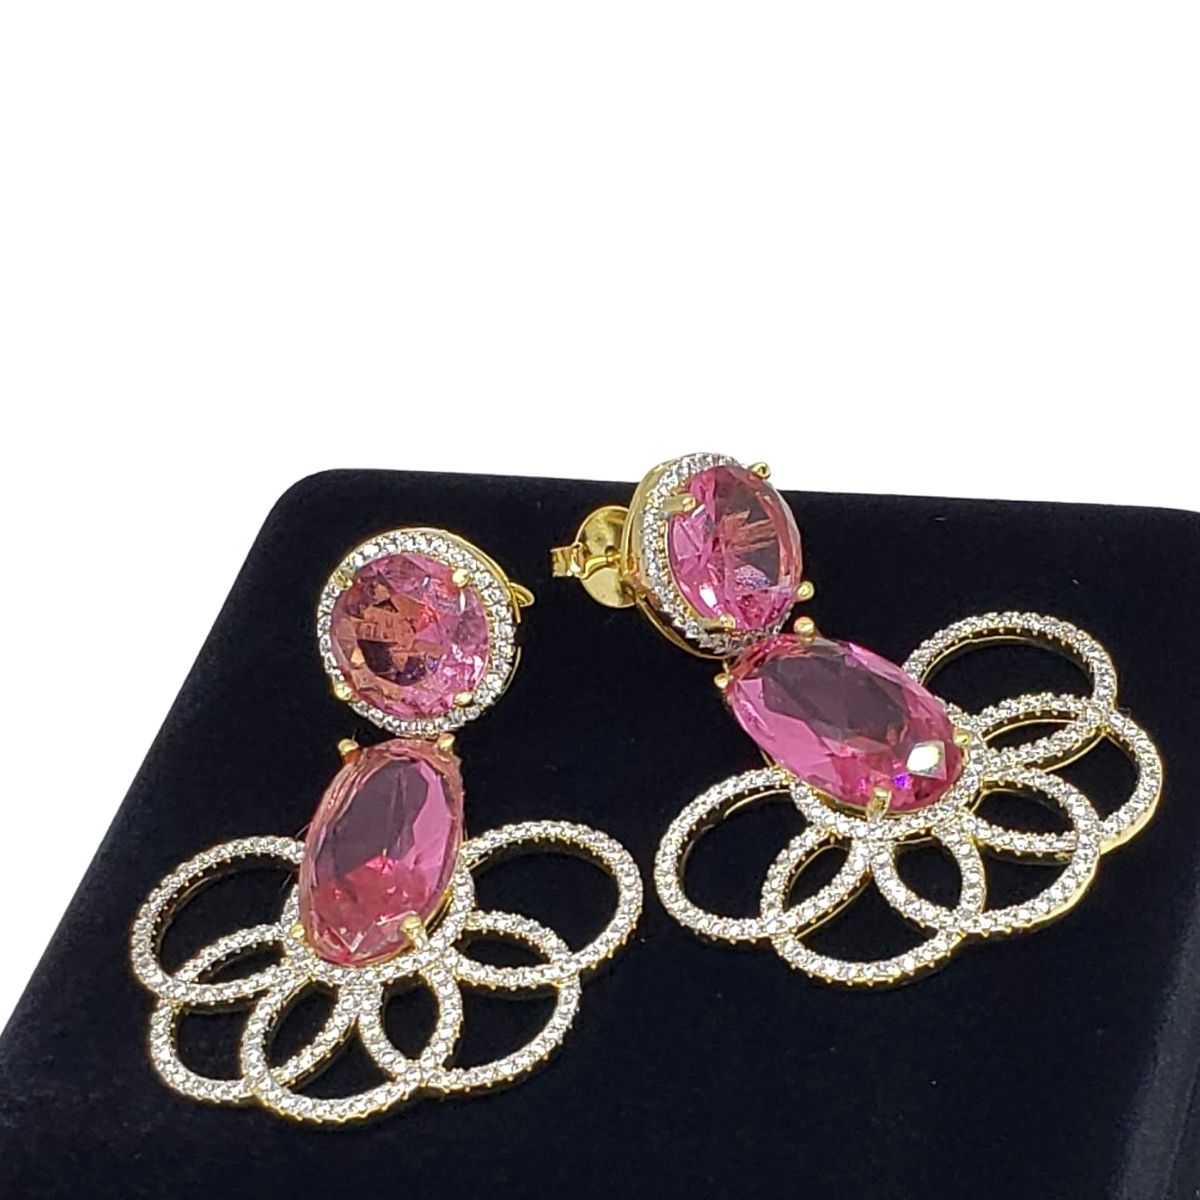 Brincos Cristal Pink Rubelita Cravejados Com Zirconias Banho De Ouro 18k 3680